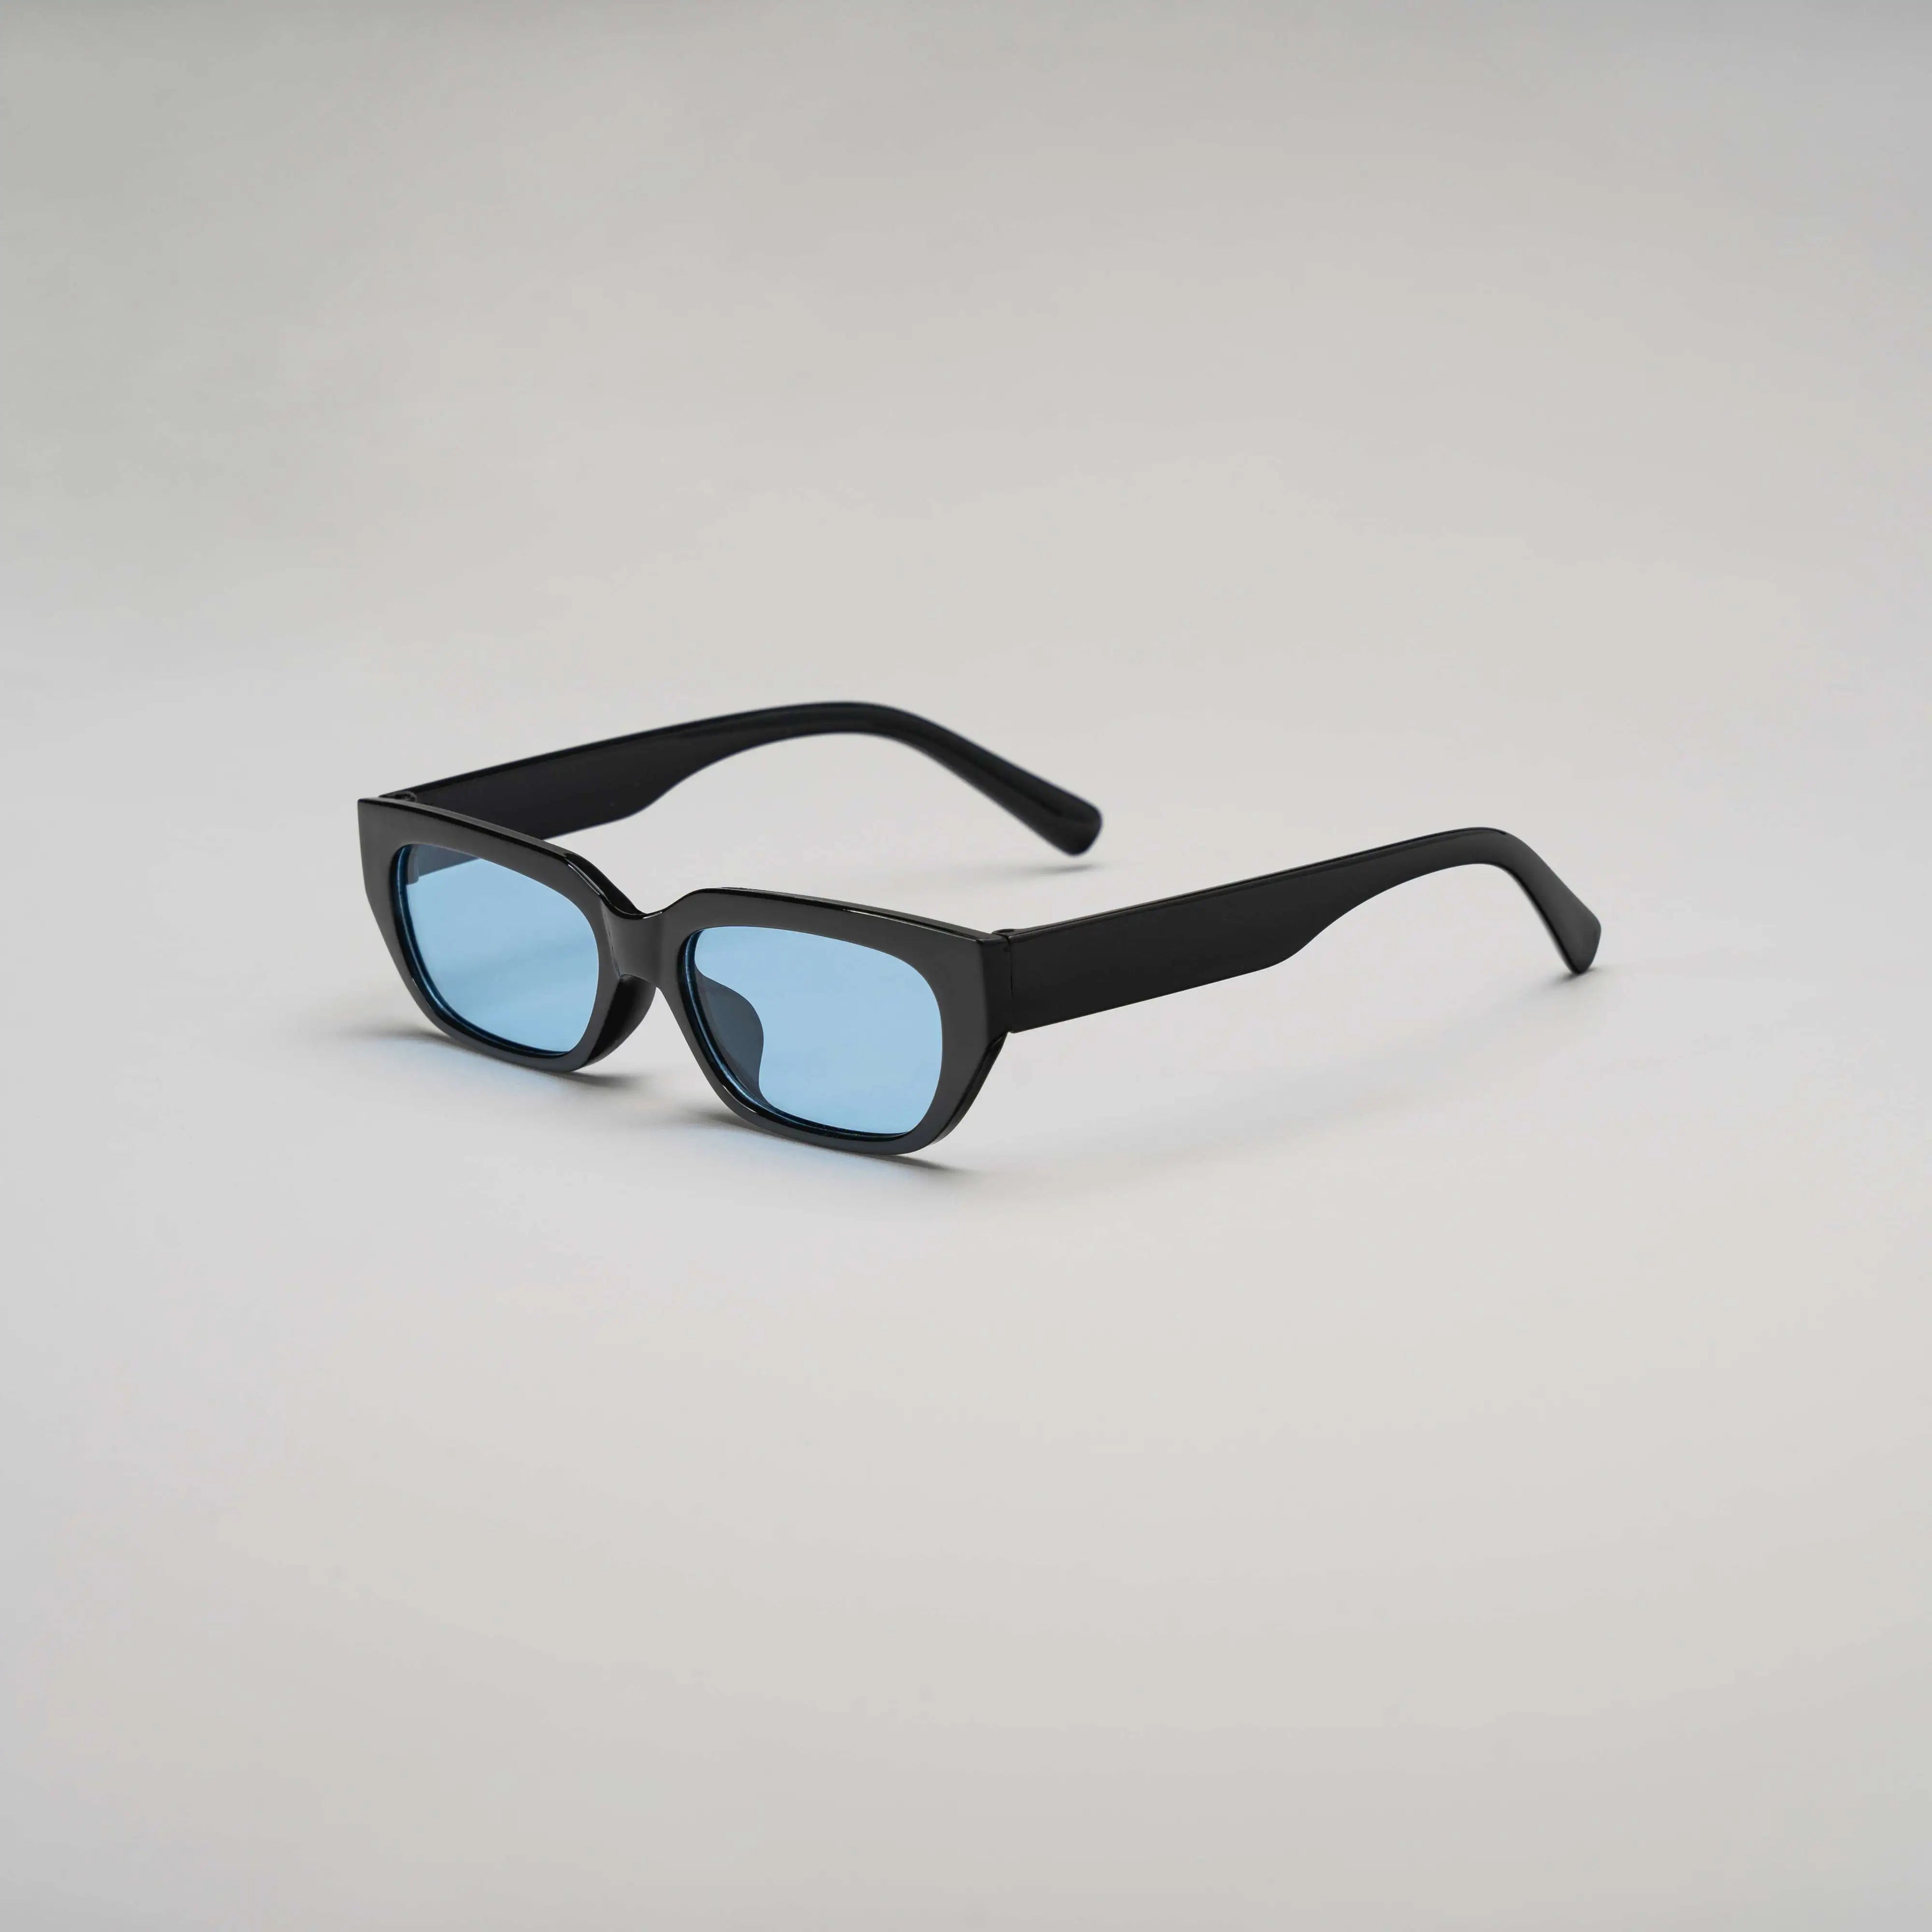 'Miami Vice' Retro Sunglasses in Black & Blue